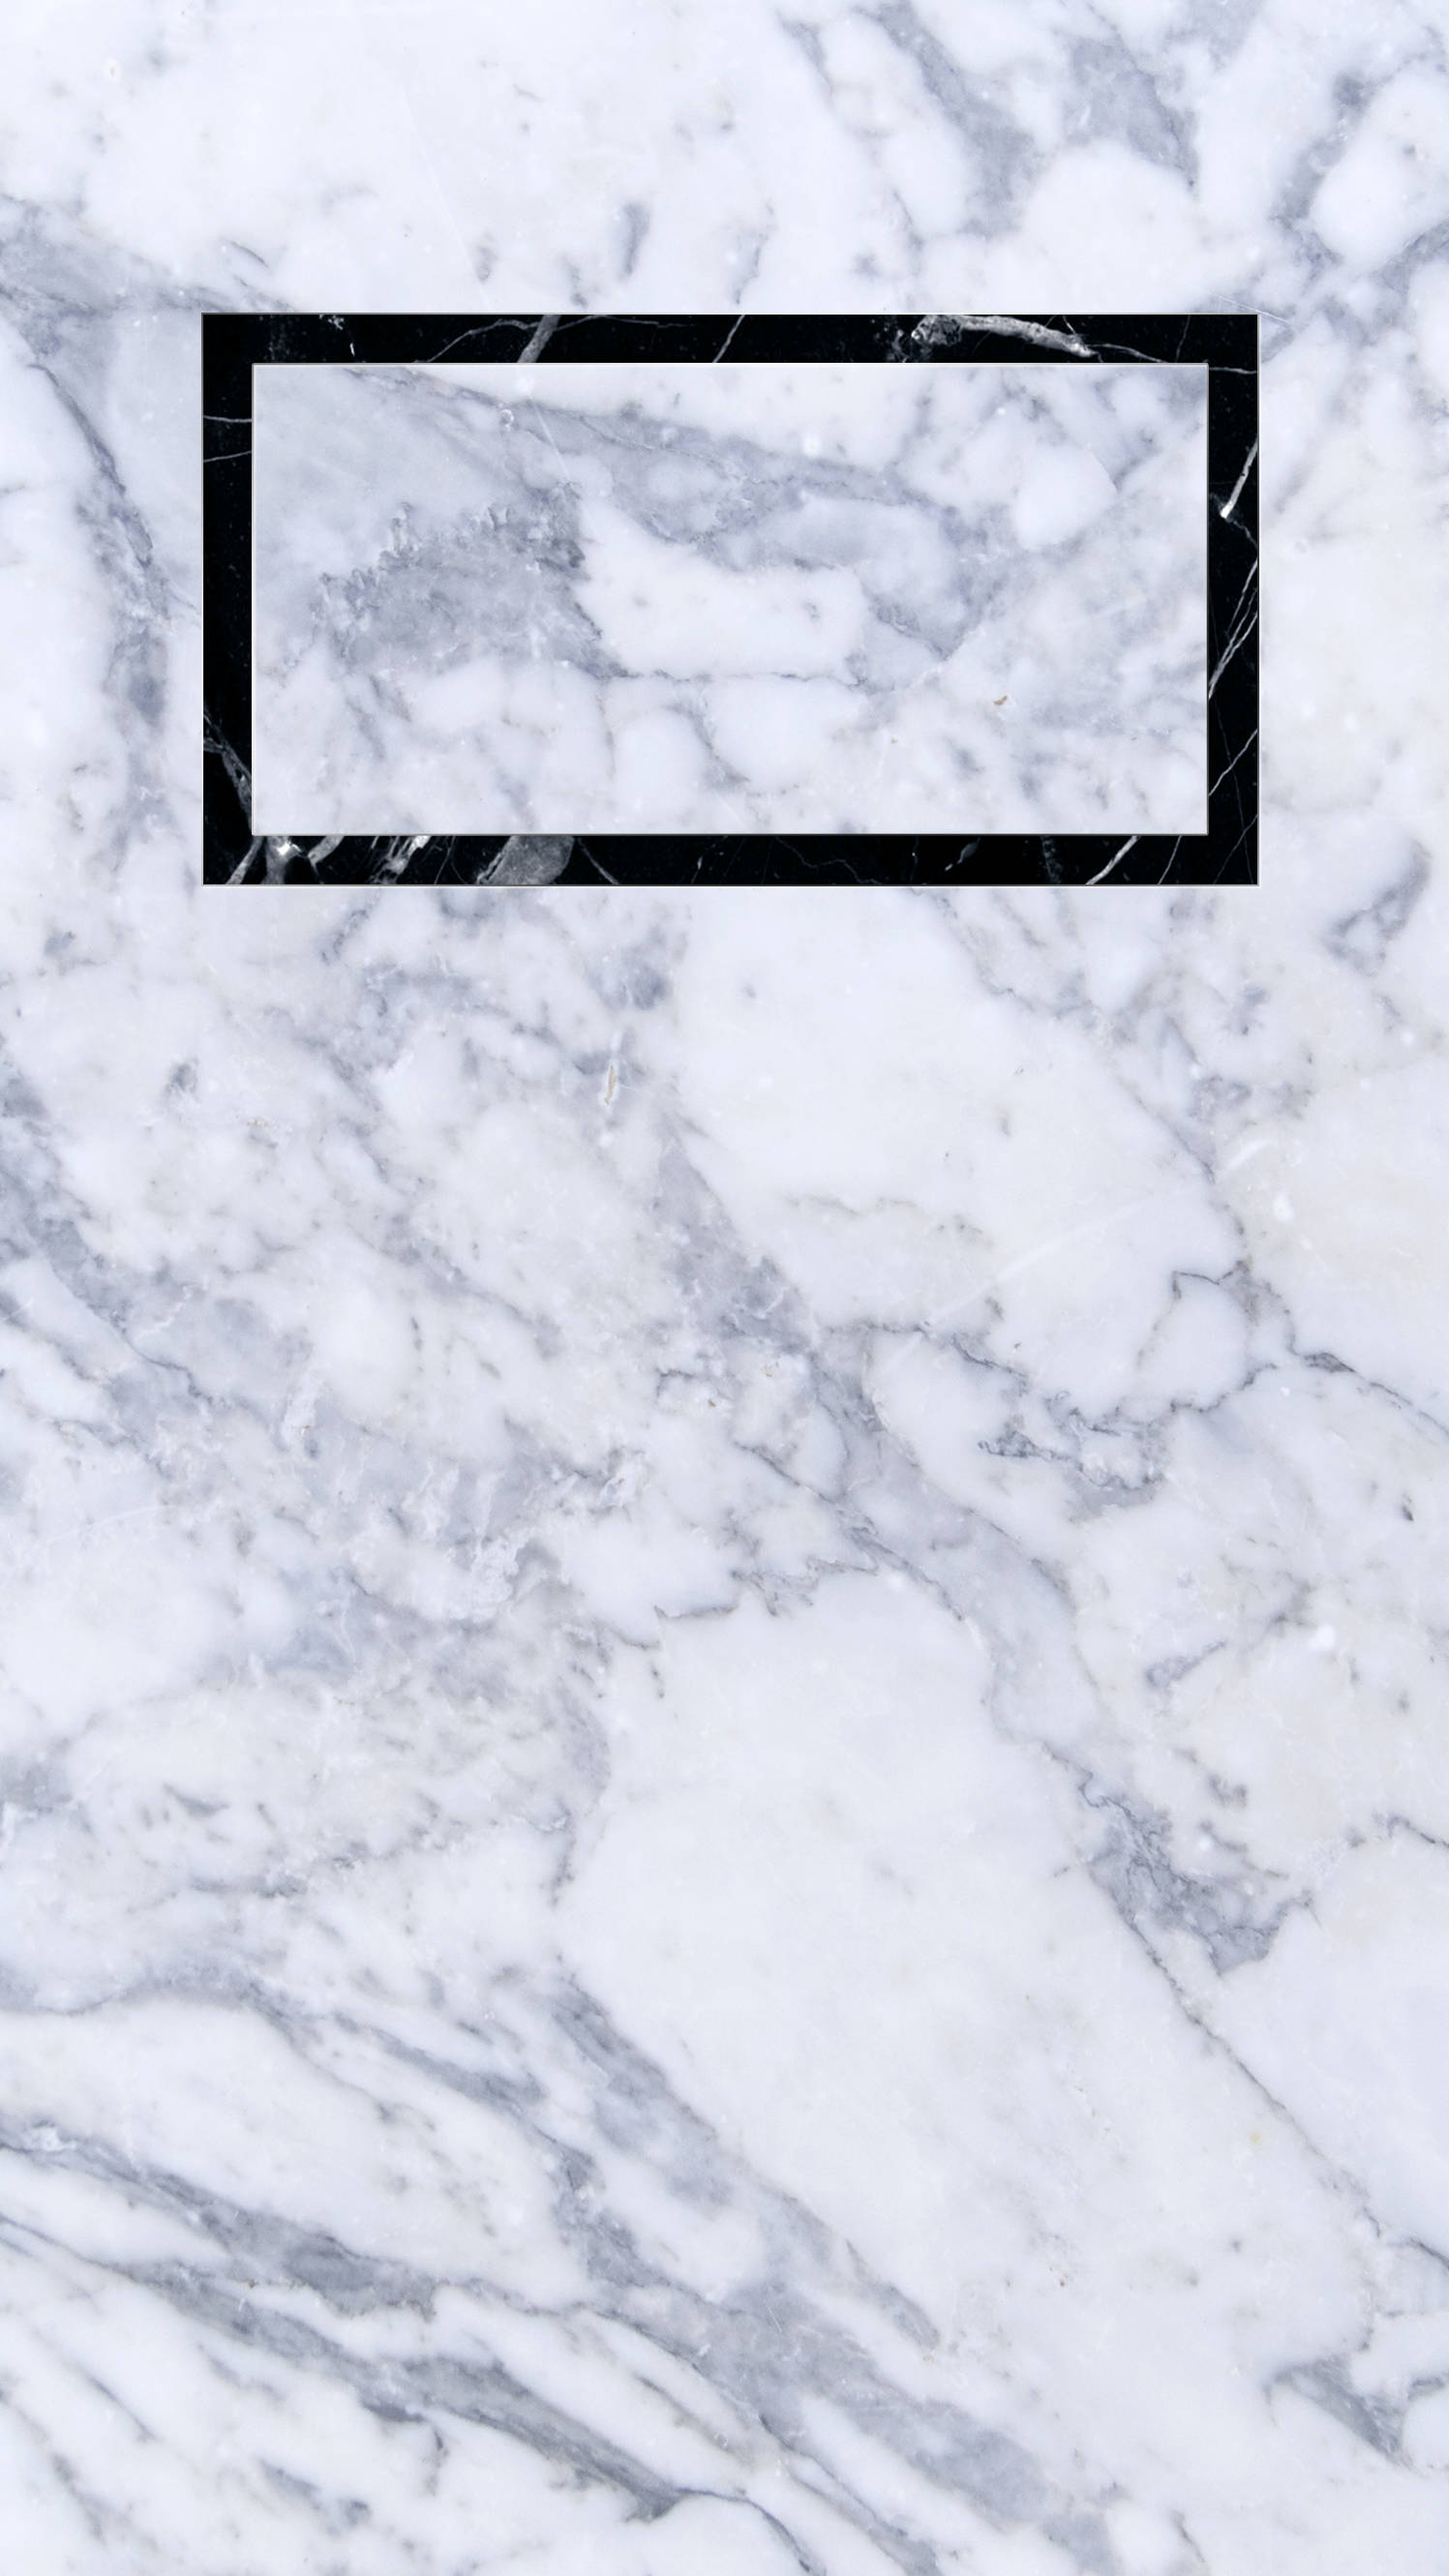 Caption: Sleek Black Clock On Elegant White Marble Iphone Background